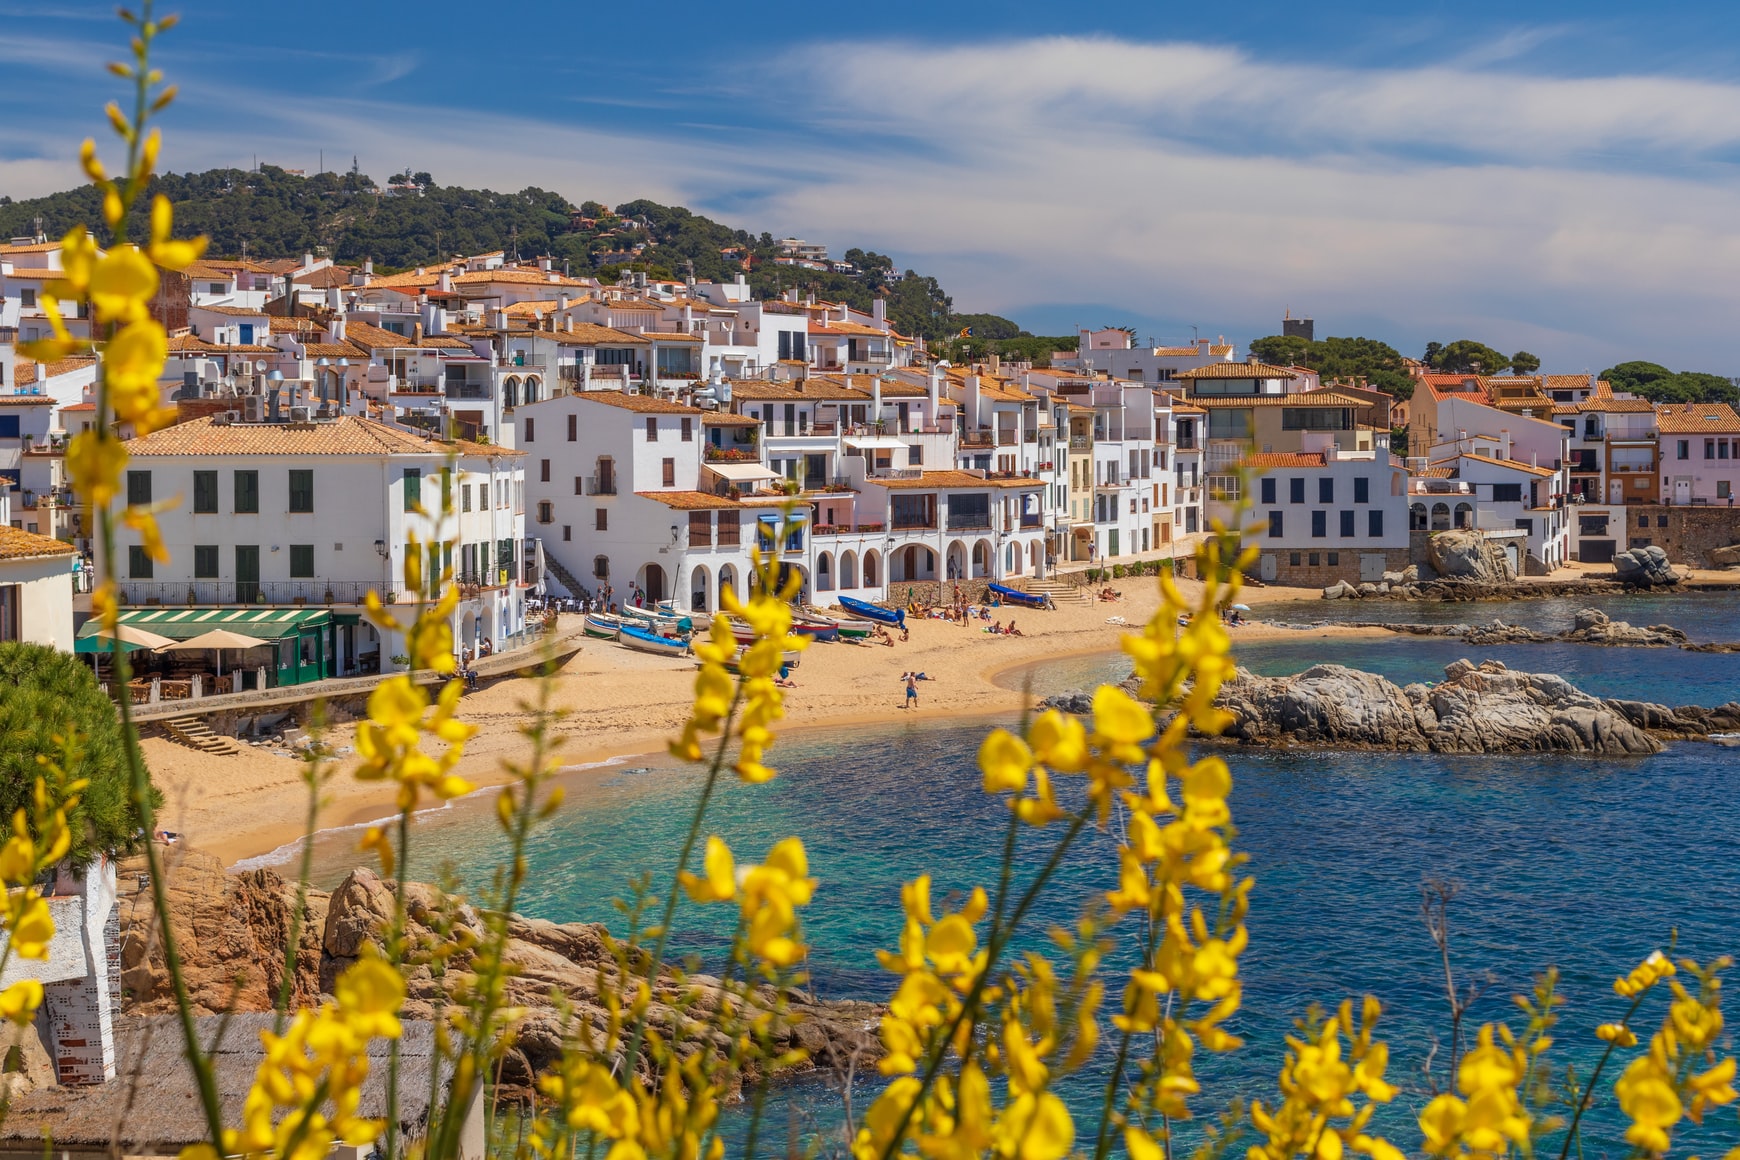 Los mejores lugares para vivir en España para expatriados con diferentes necesidades